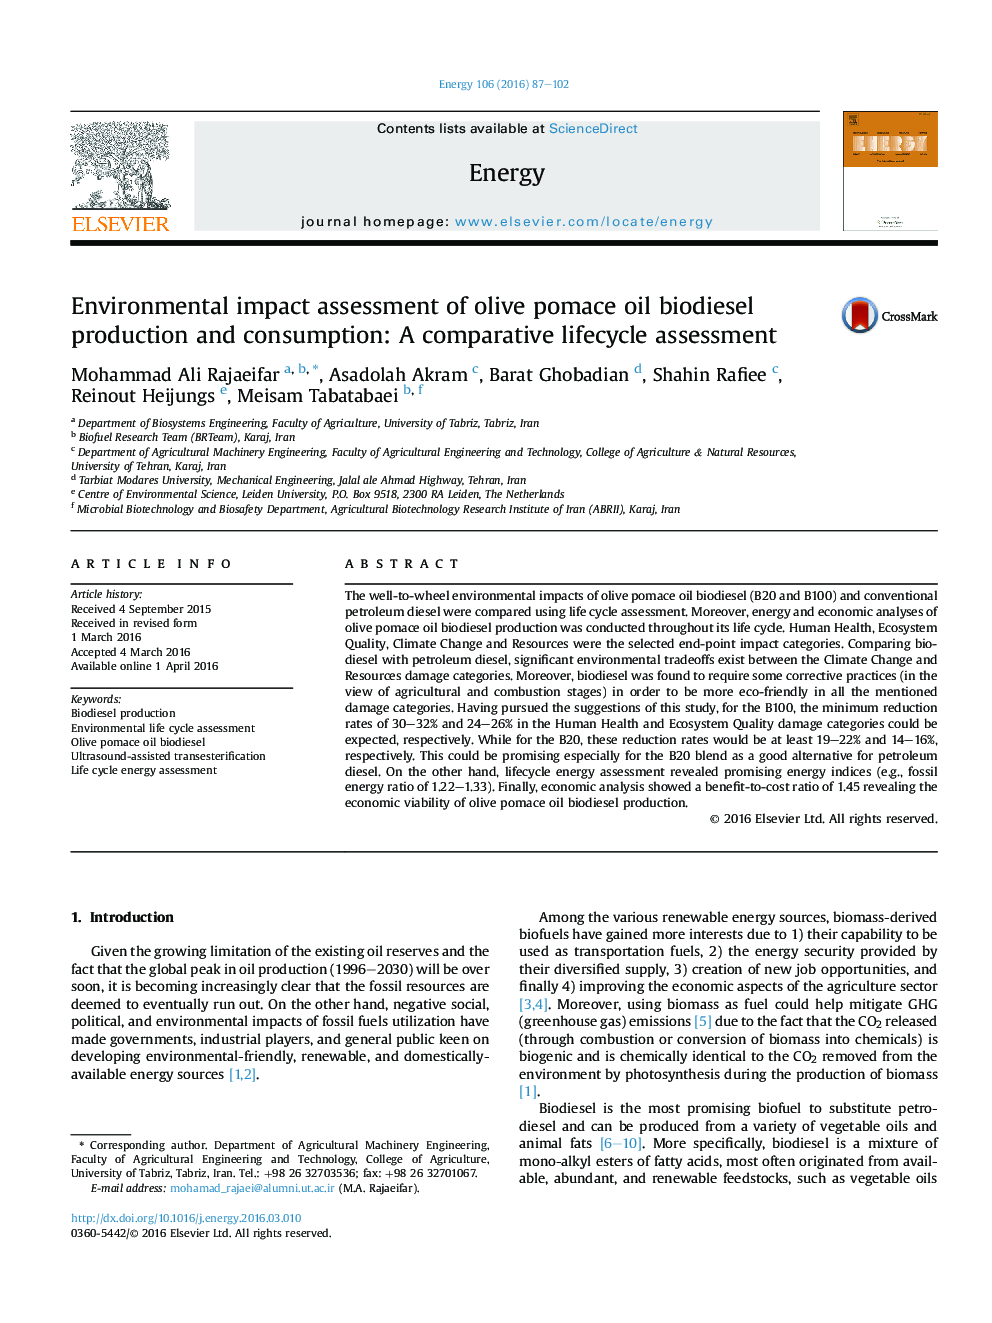 ارزیابی تاثیر زیست محیطی تولید و مصرف بیودیزل روغن زیتون زیتون: ارزیابی چرخه مقایسه ای 